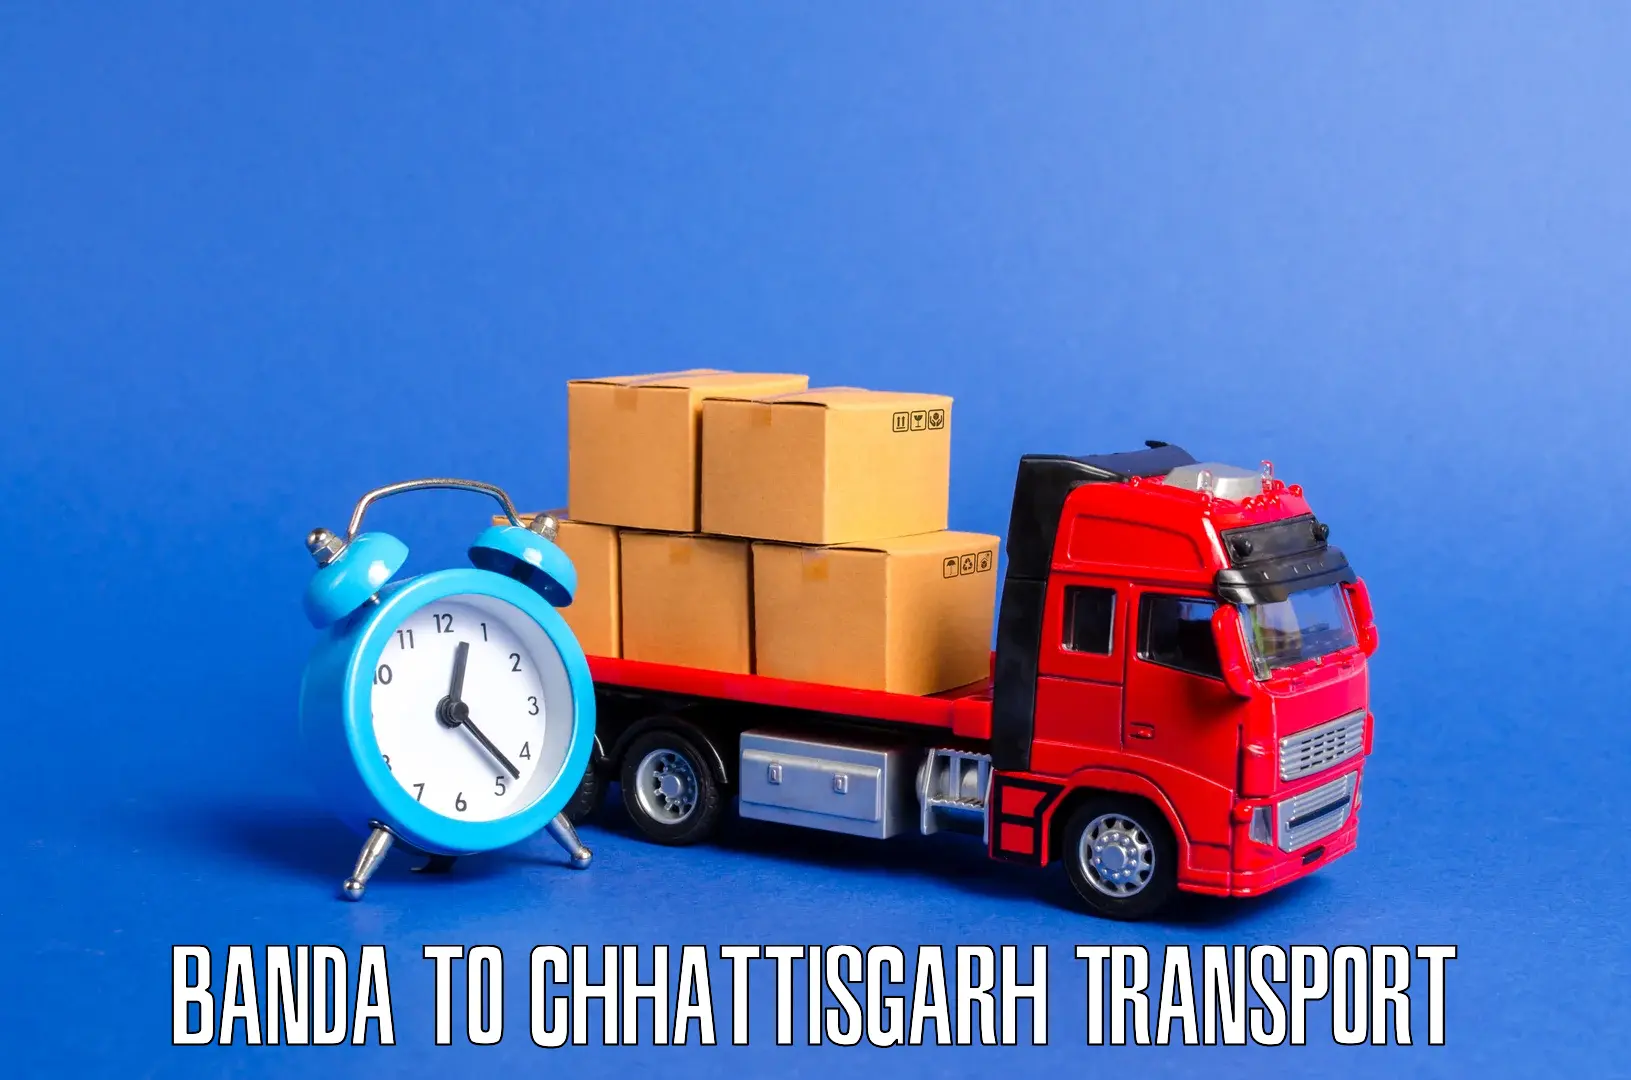 Cargo train transport services in Banda to Chhattisgarh